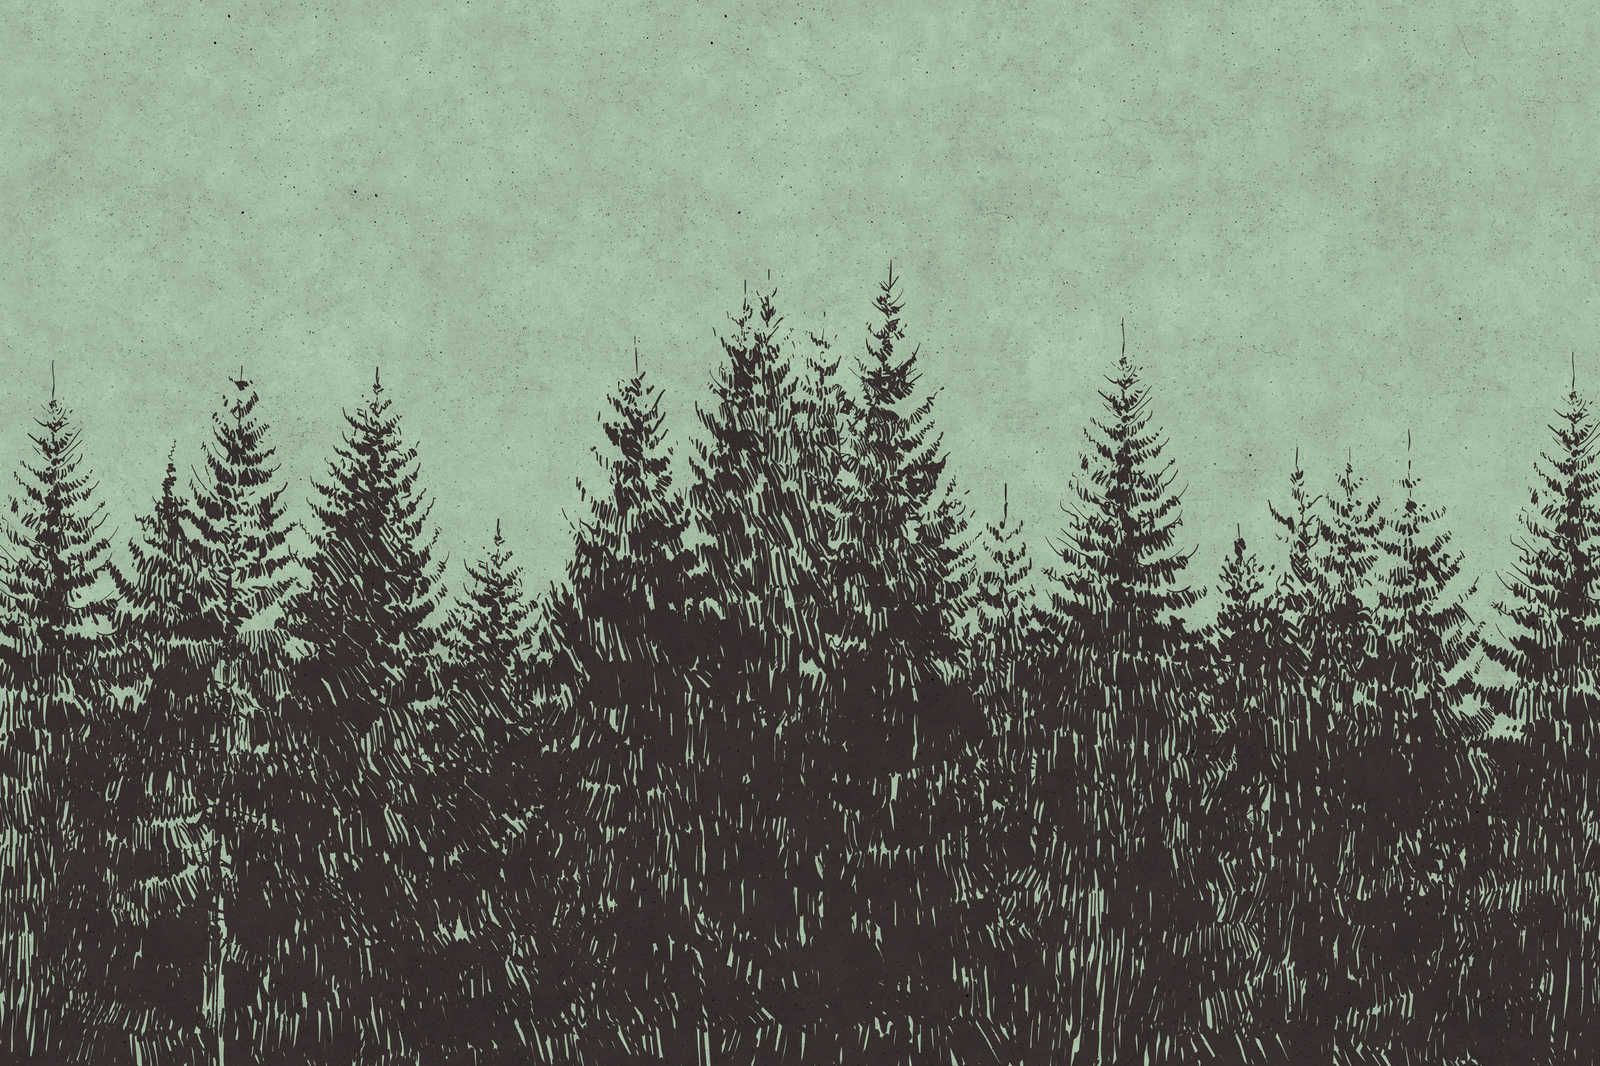             Wald Leinwandbild im Zeichenstil Tannenspitzen – 1,20 m x 0,80 m
        